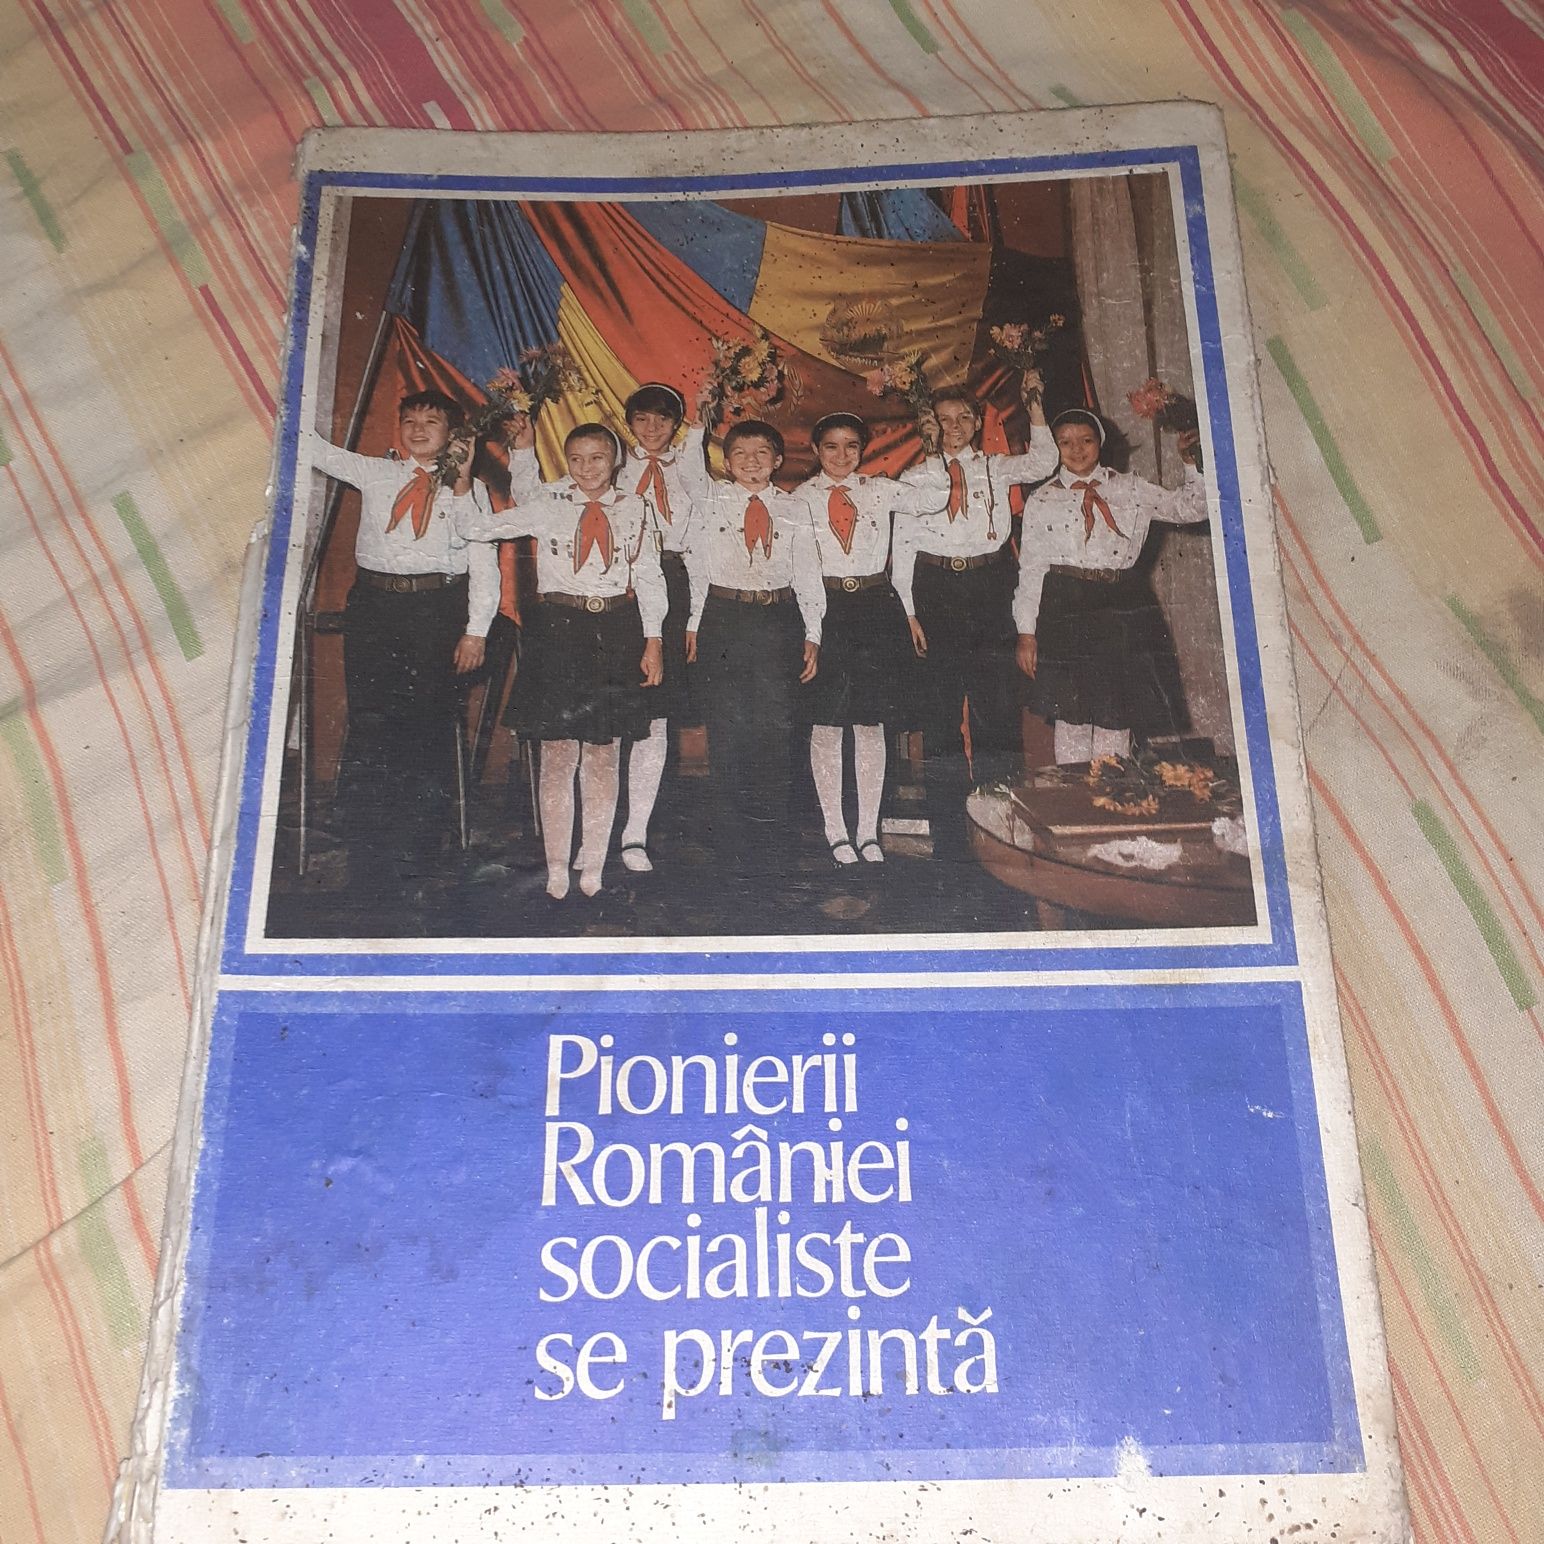 Pionierii României socialiste se prezintă carte veche de demult